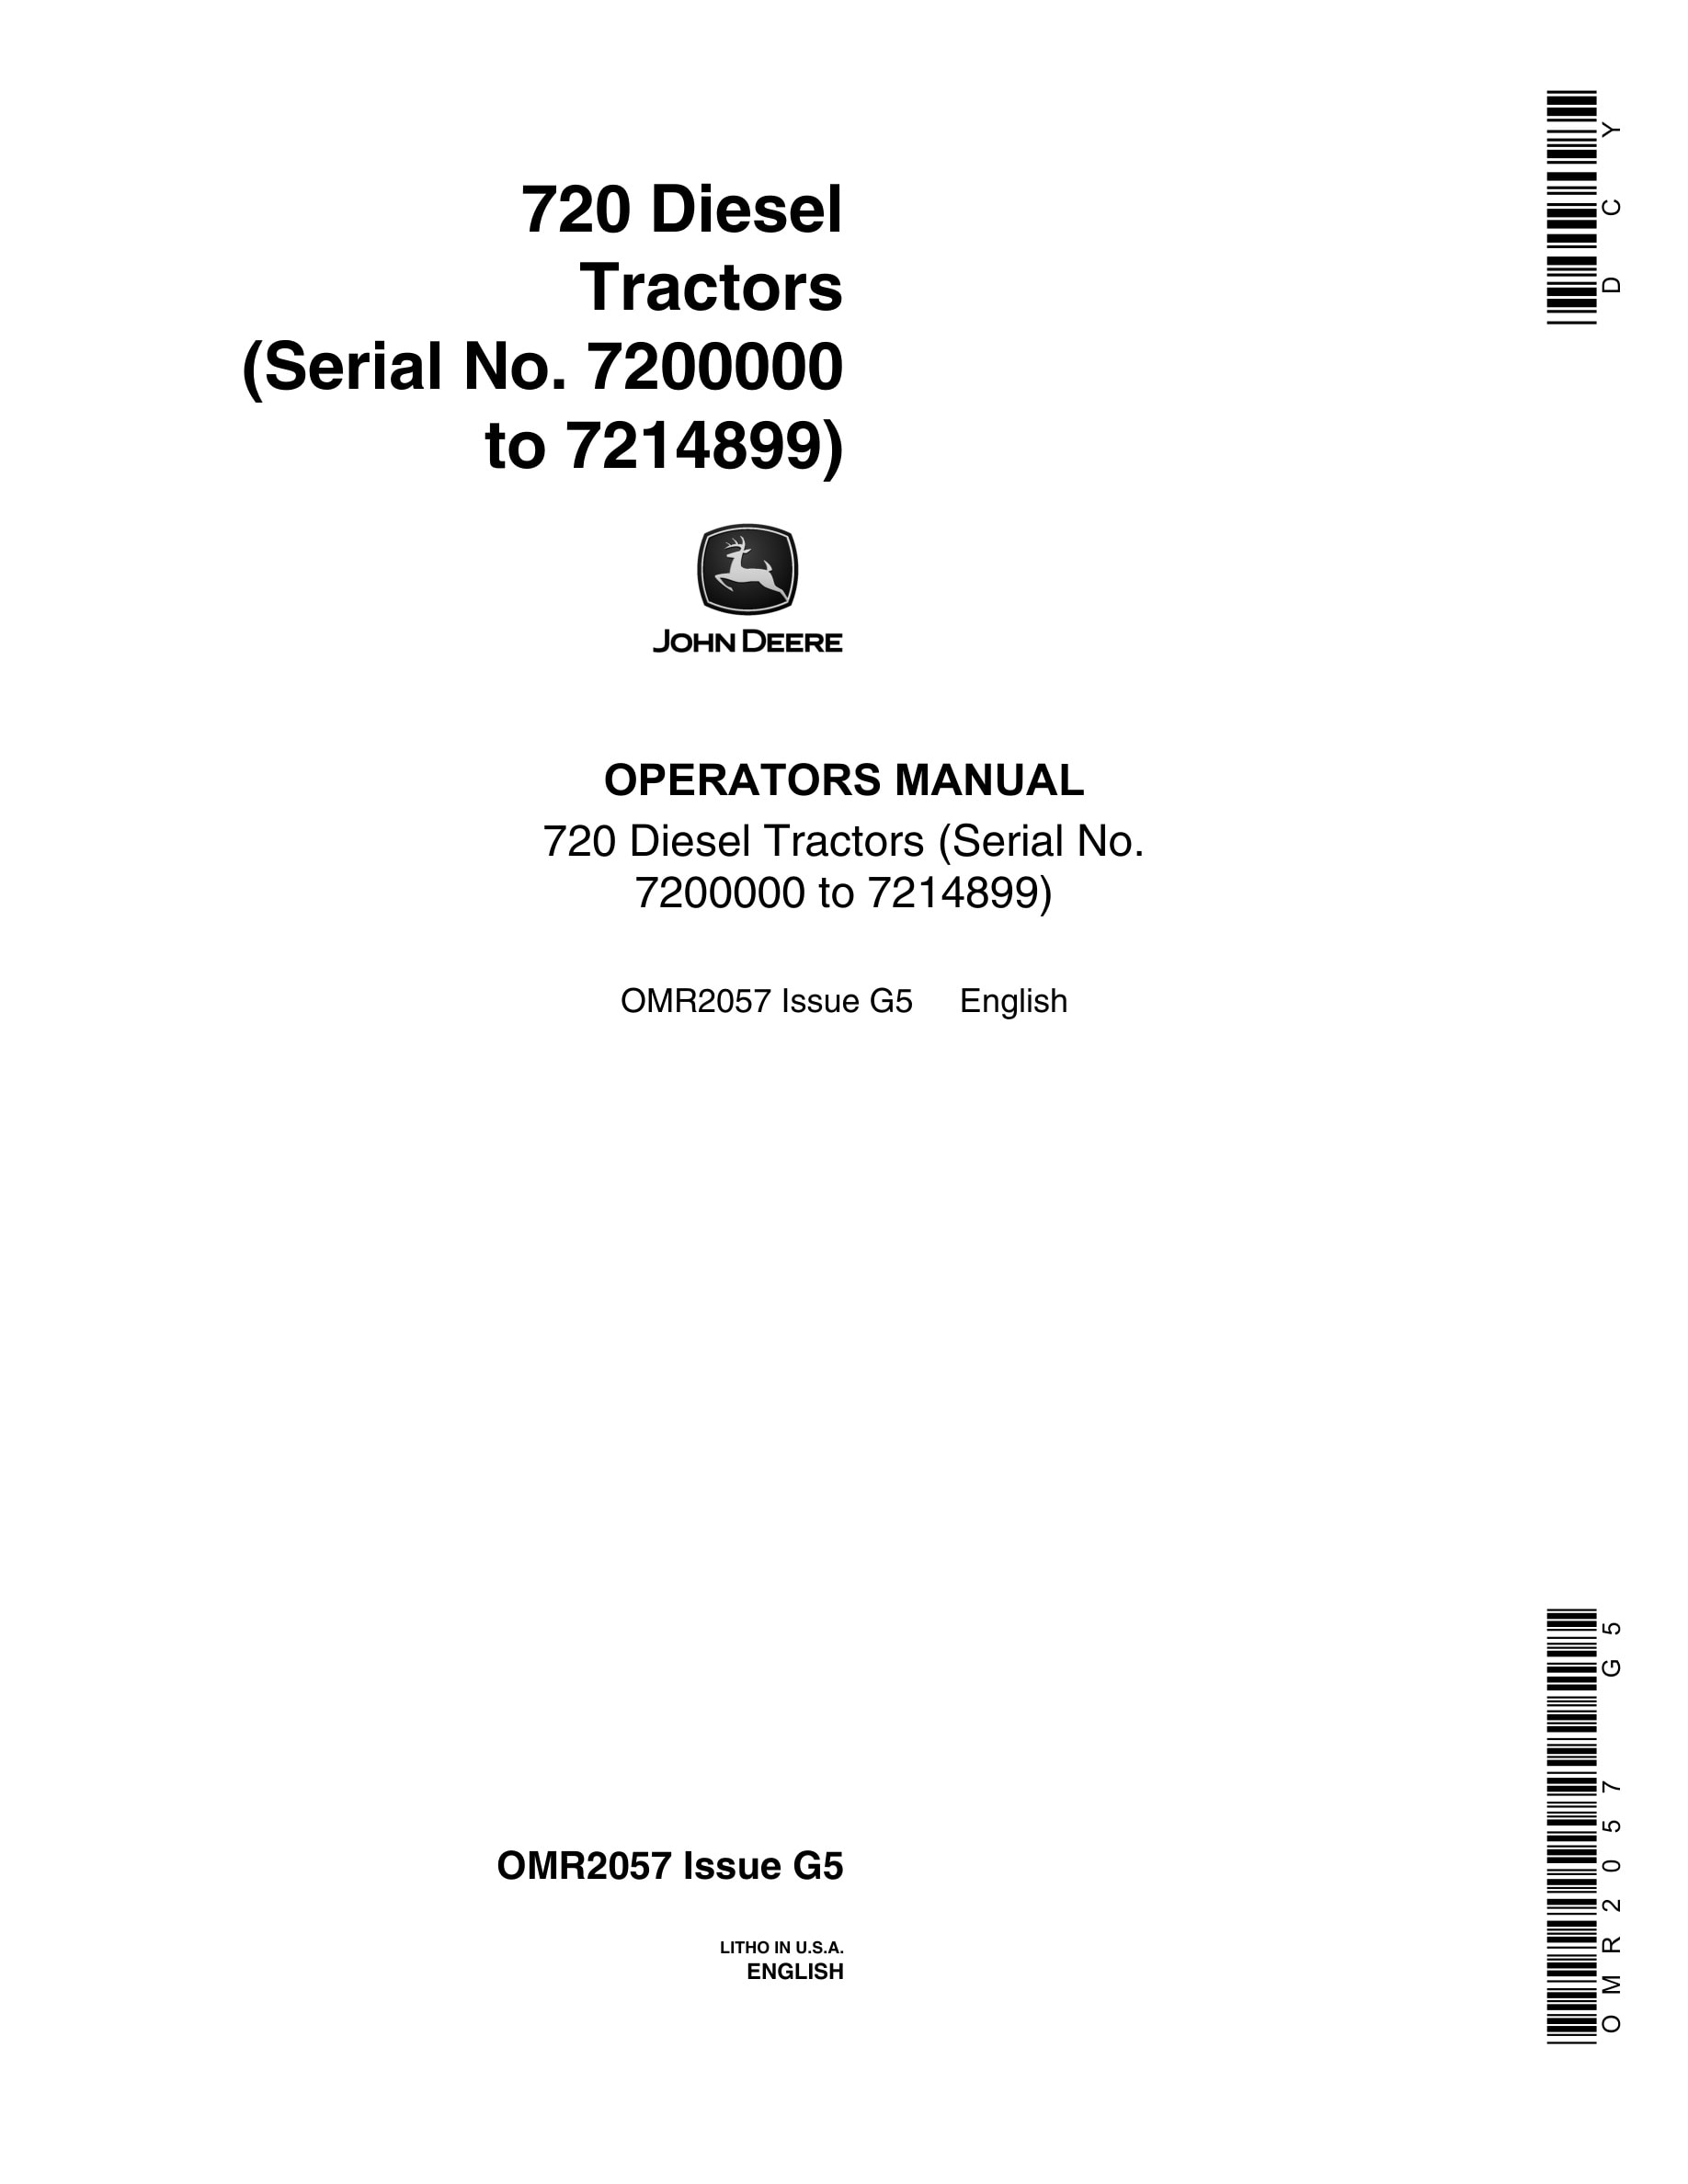 John Deere 720 Tractor Operator Manual OMR2057-1